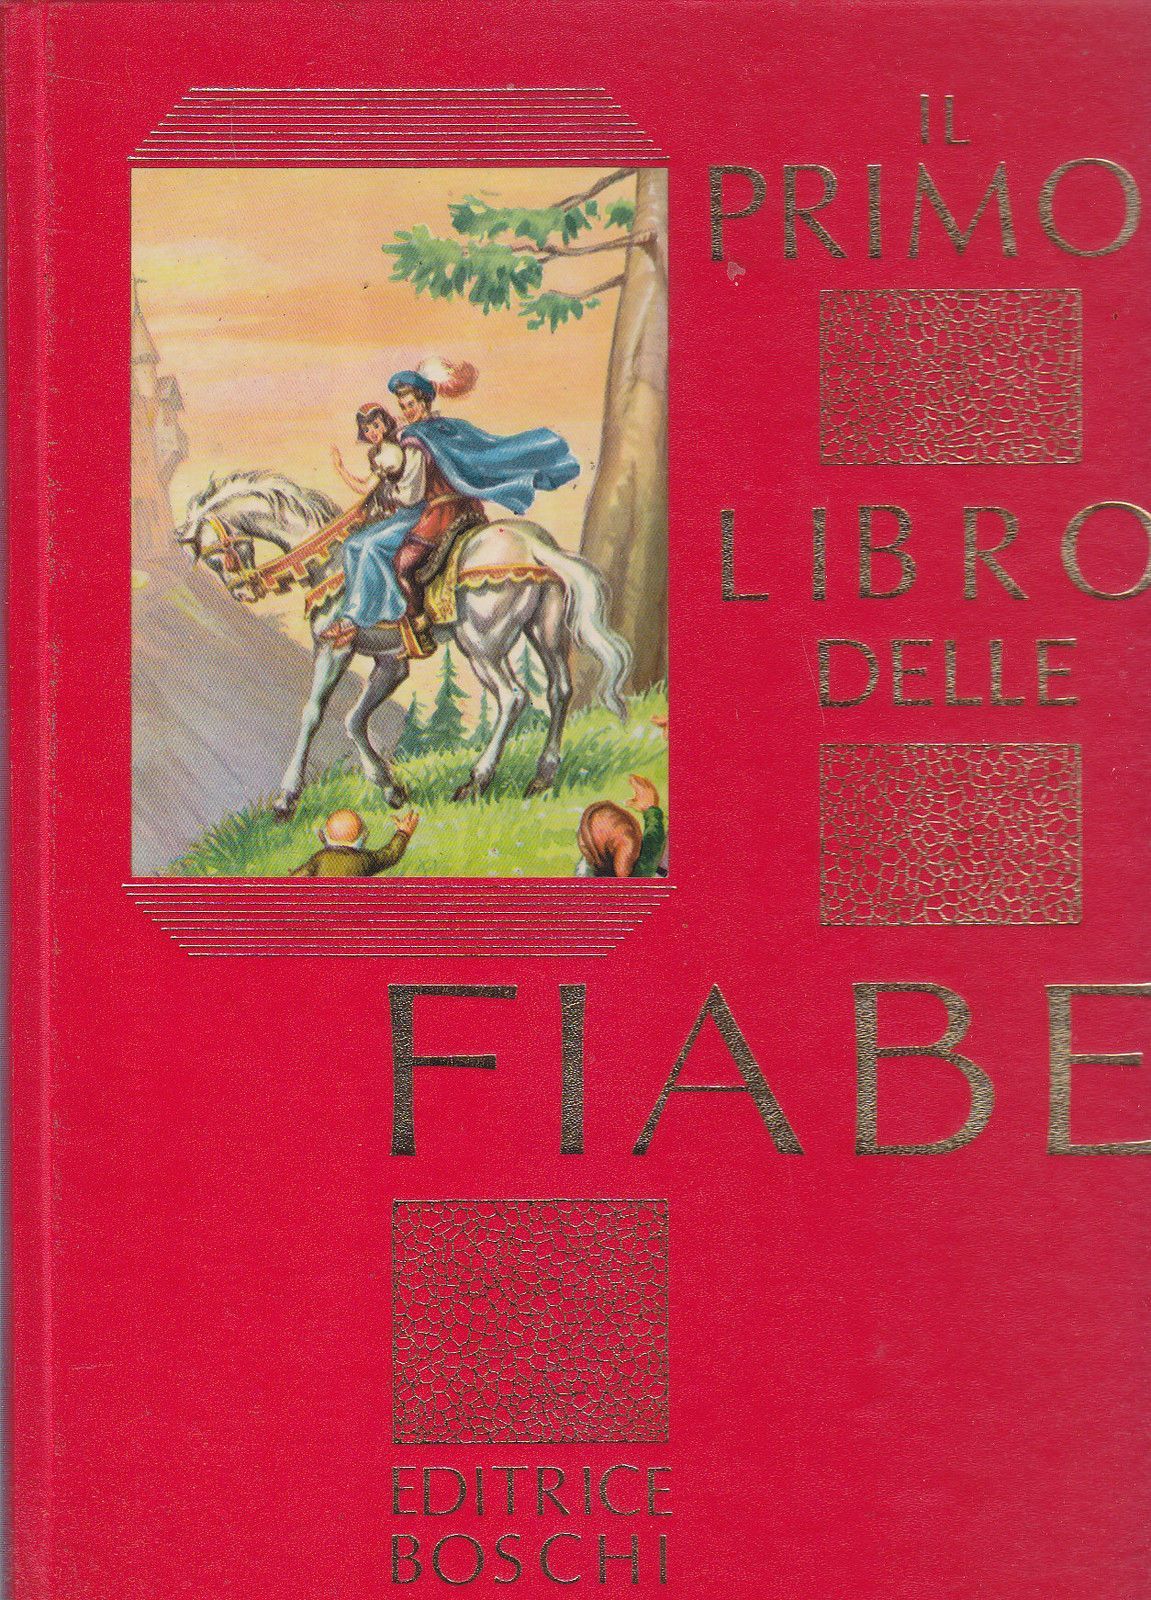 “Il primo libro delle fiabe” (Editrice Boschi): scusate, ma che libro è?